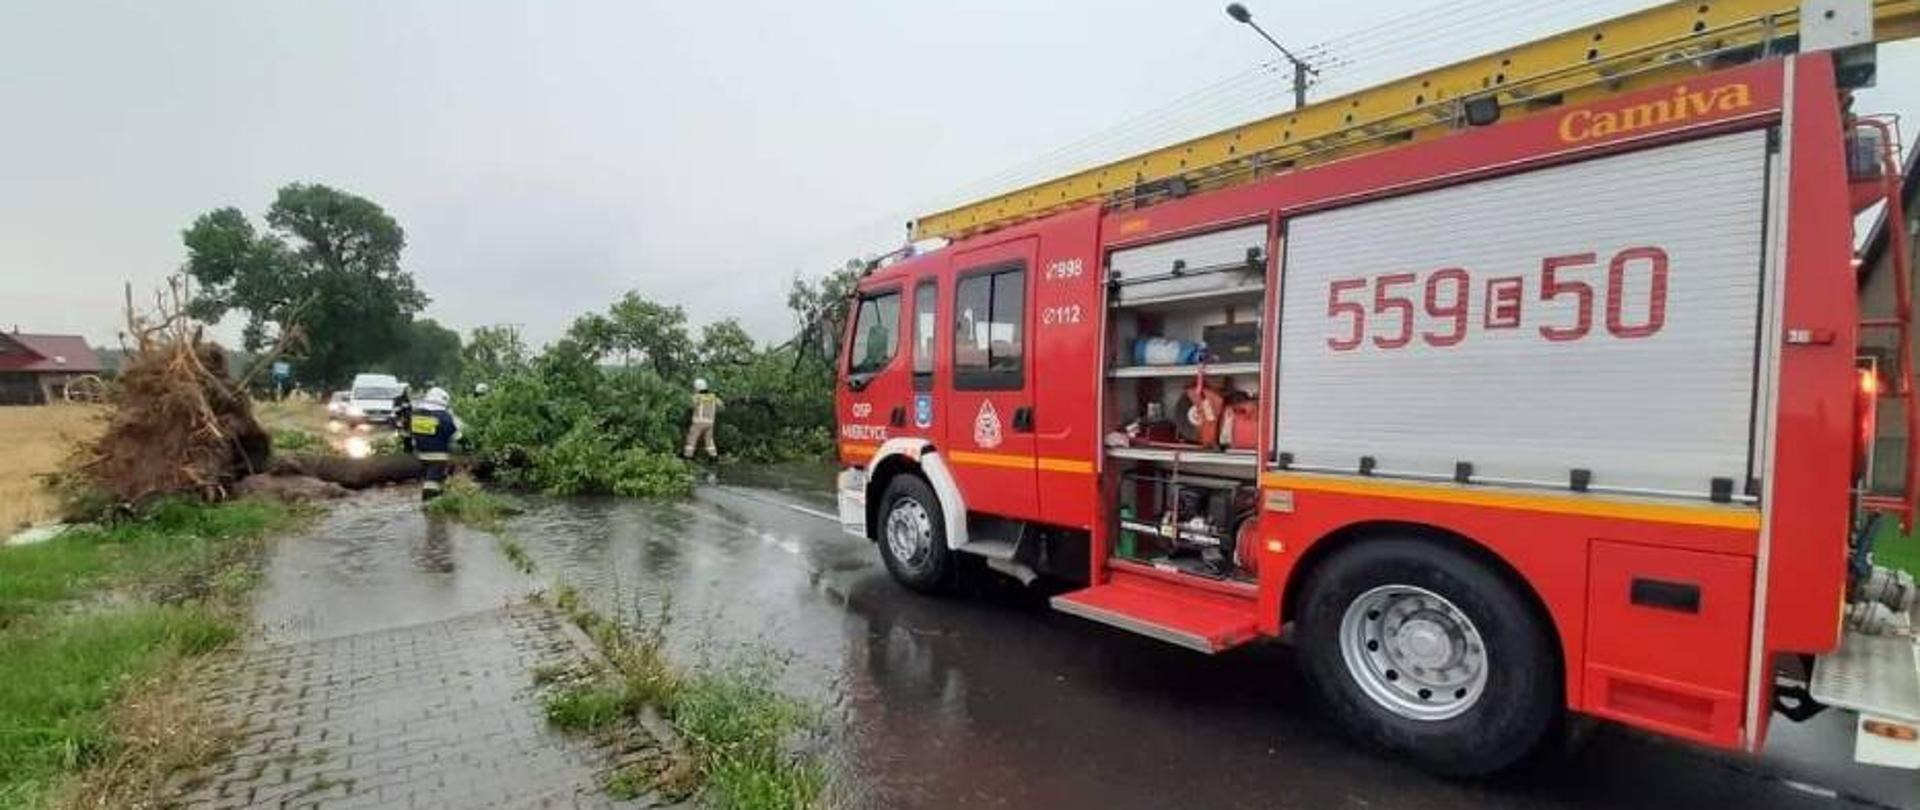 Zdjęcie przestawia pojazd pożarniczy na drodze oraz strażaków usuwających drzewo przewrócone na drogę.